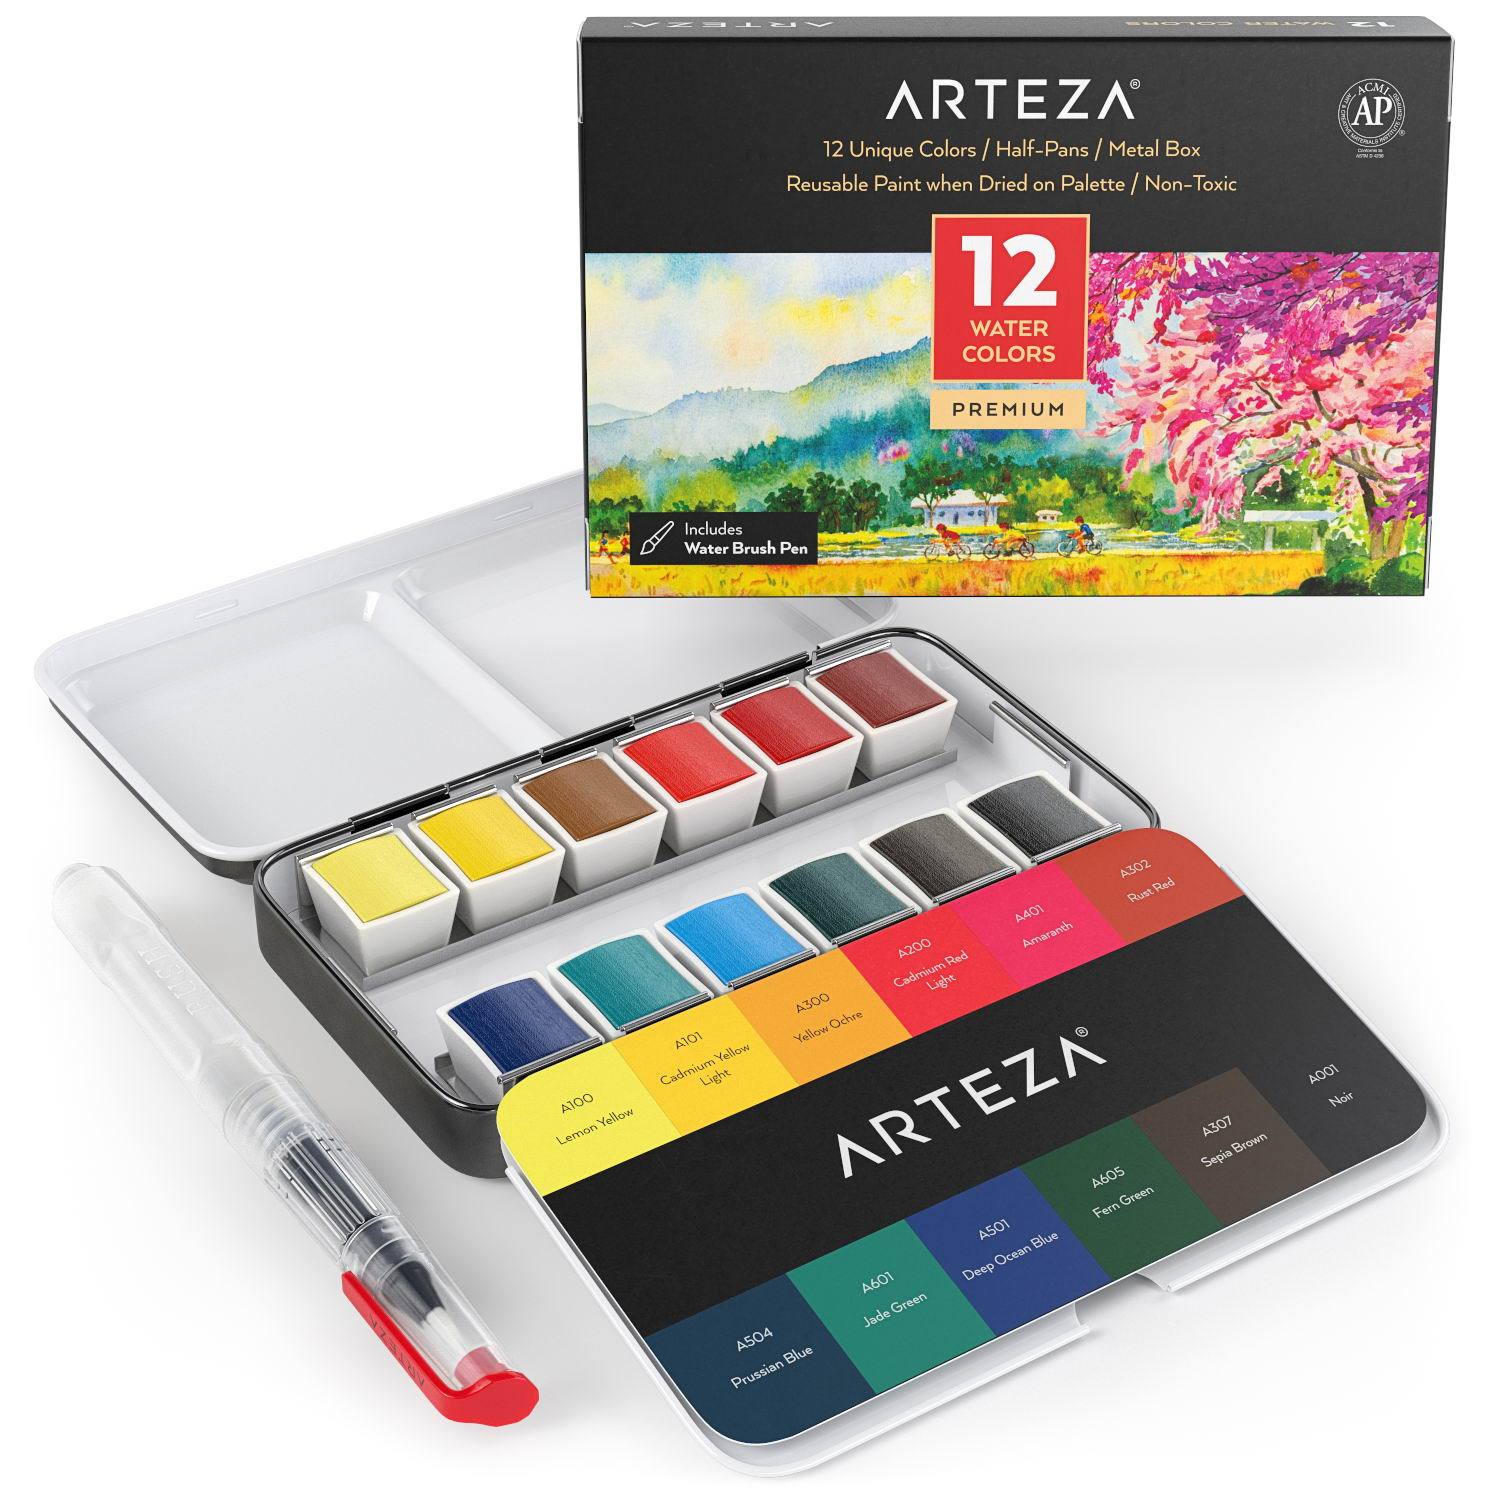 https://arteza.com/cdn/shop/products/watercolor-set-of-12-premium-half-pans-assorted-colors_ZSK76ocO.jpg?v=1669047616&width=1946